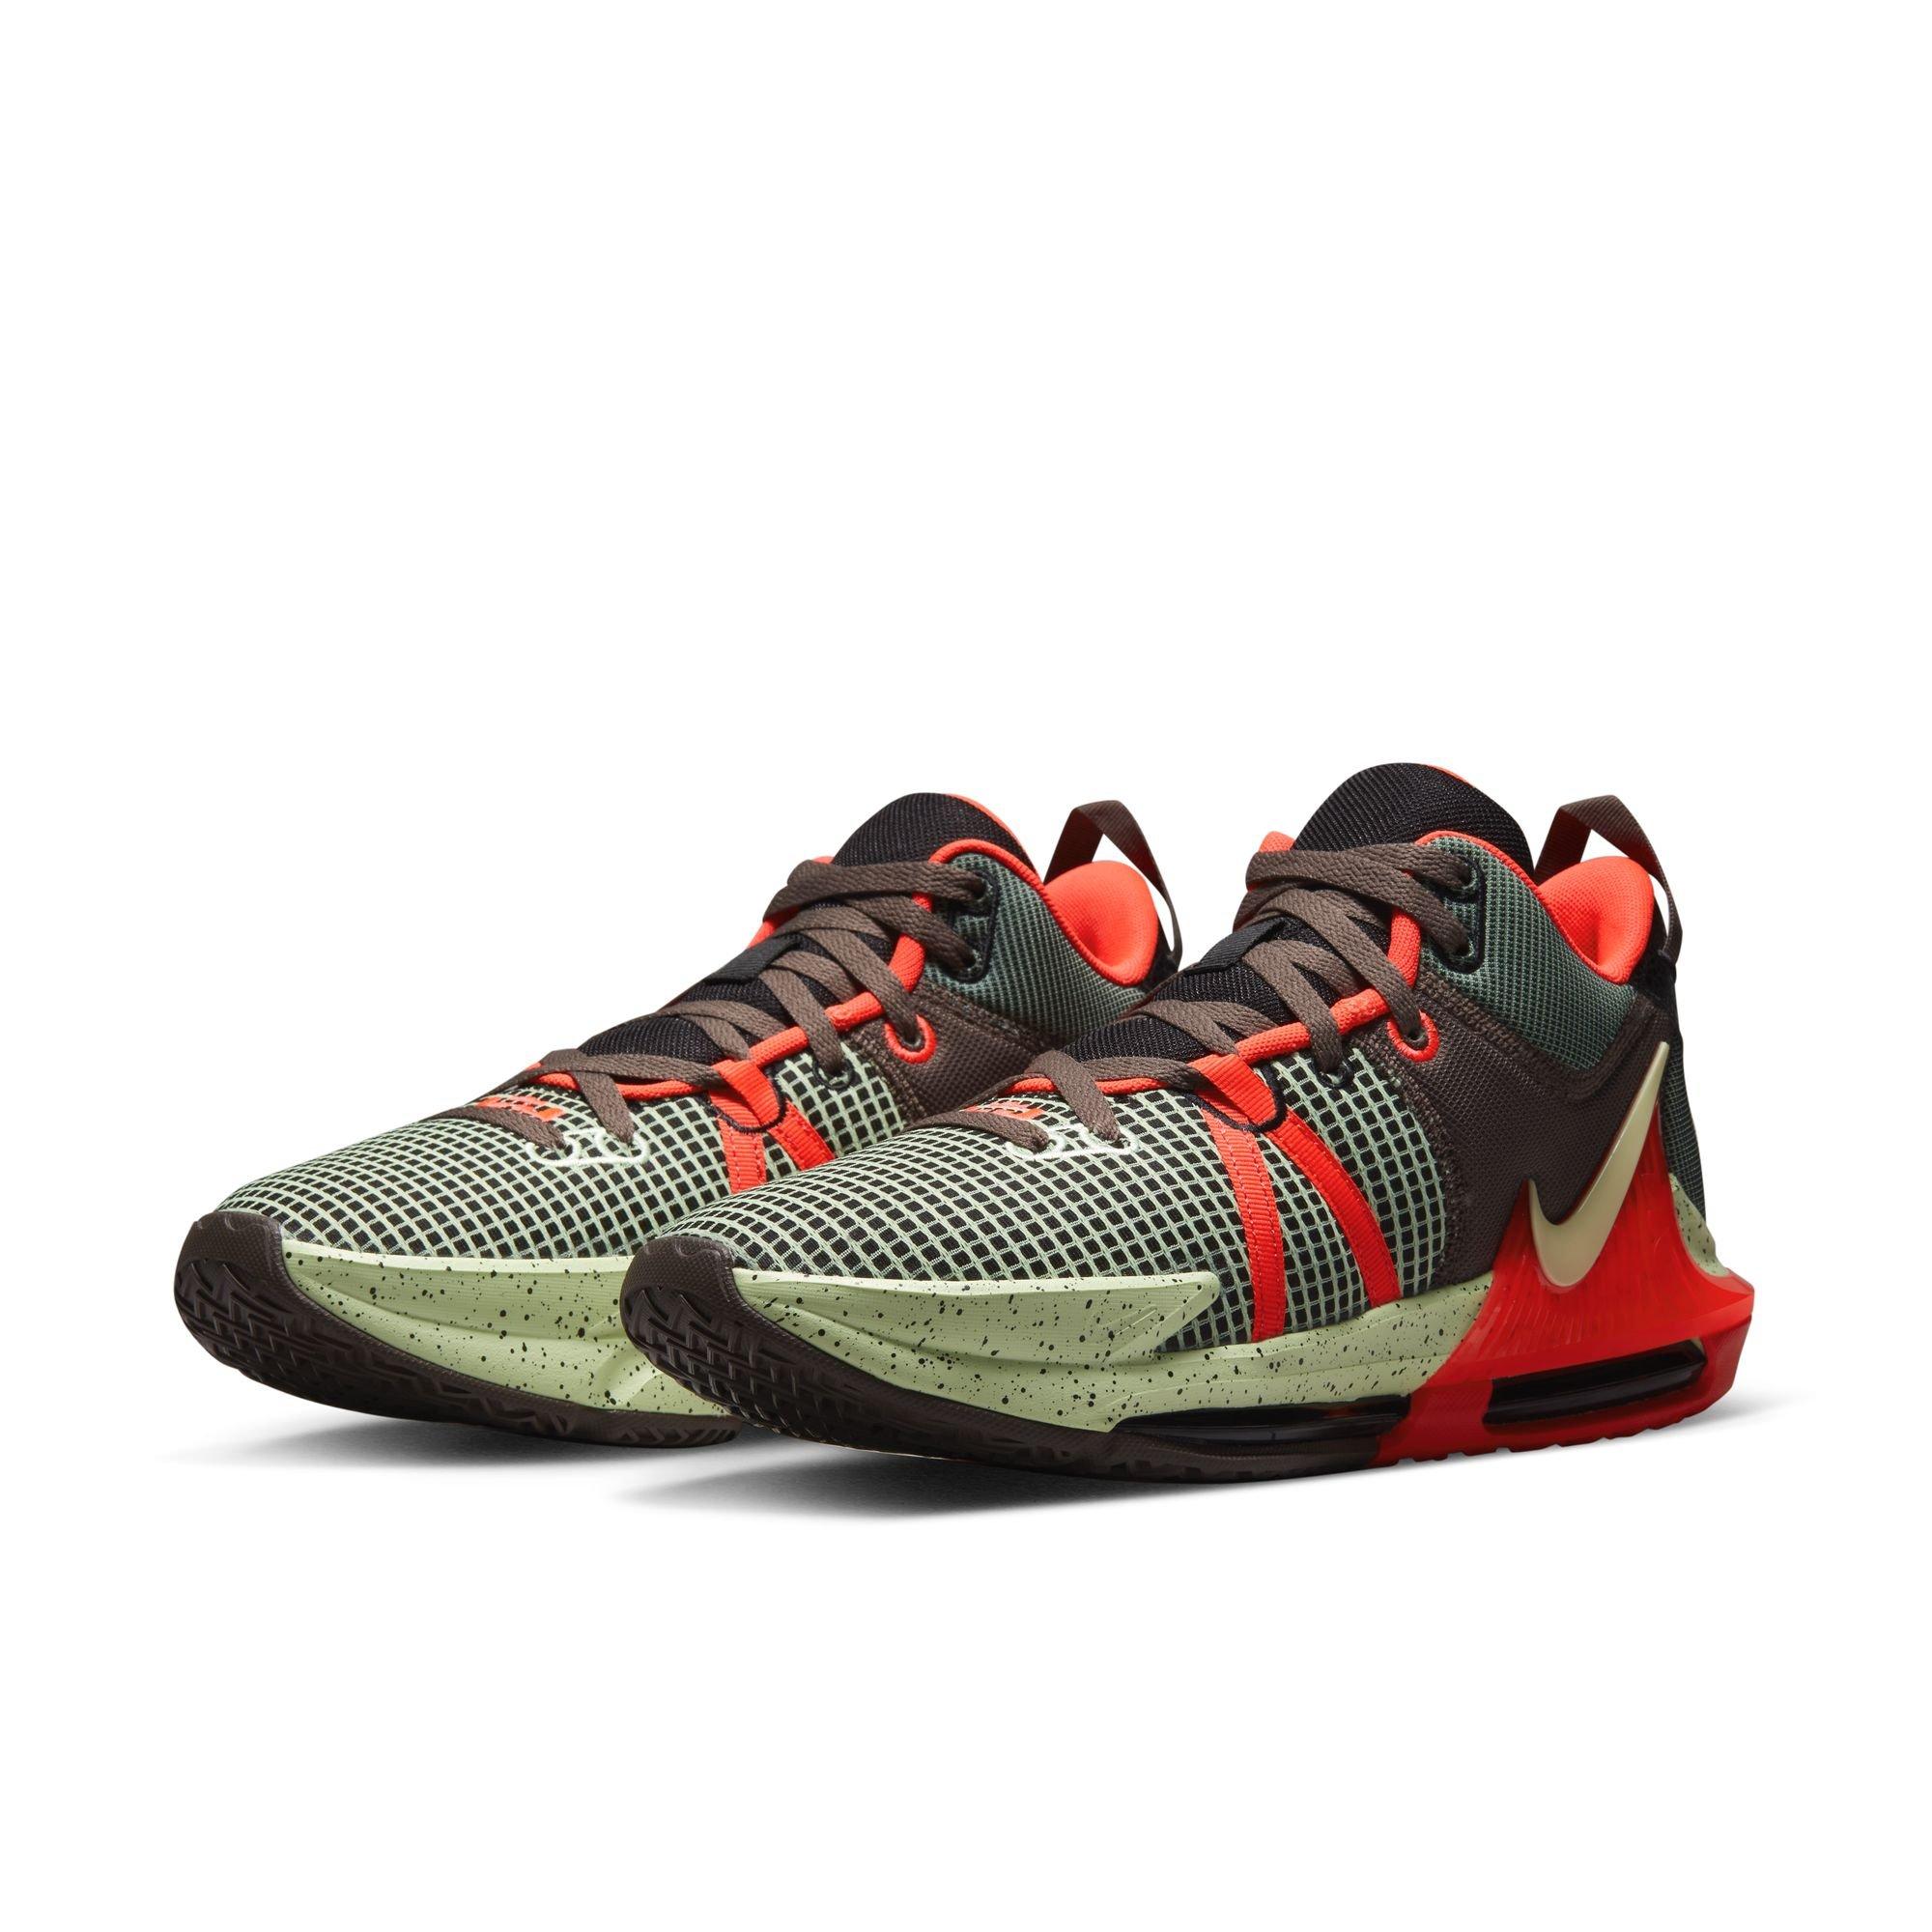 Nike LeBron 7 MVP 8.5